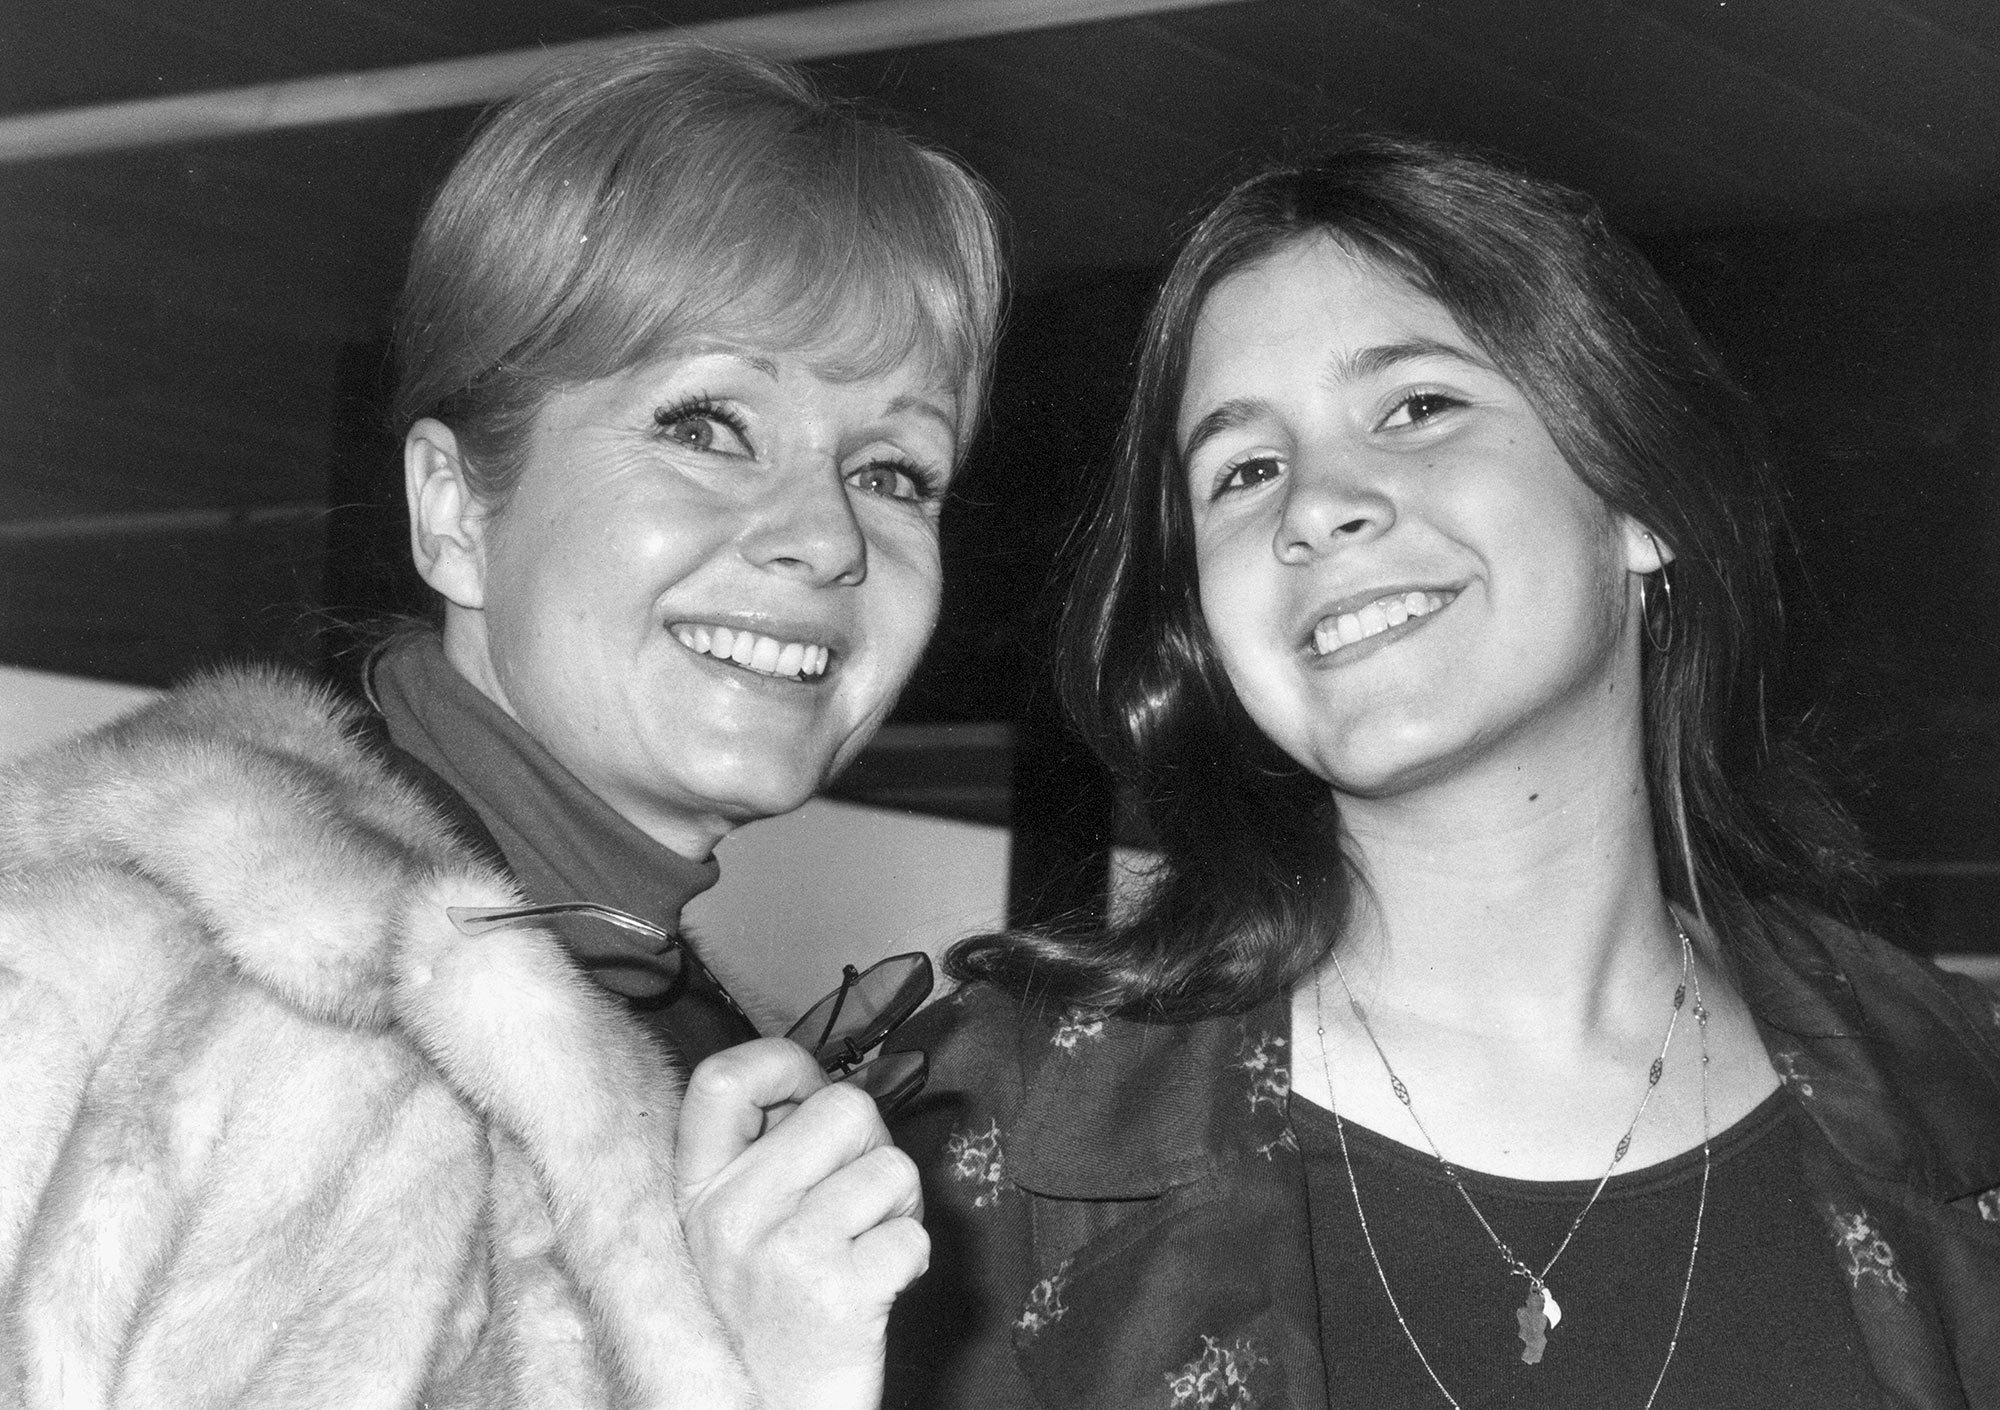  Celebrarán en conjunto funerales de Carrie Fisher y su madre, la actriz Debbie Reynolds